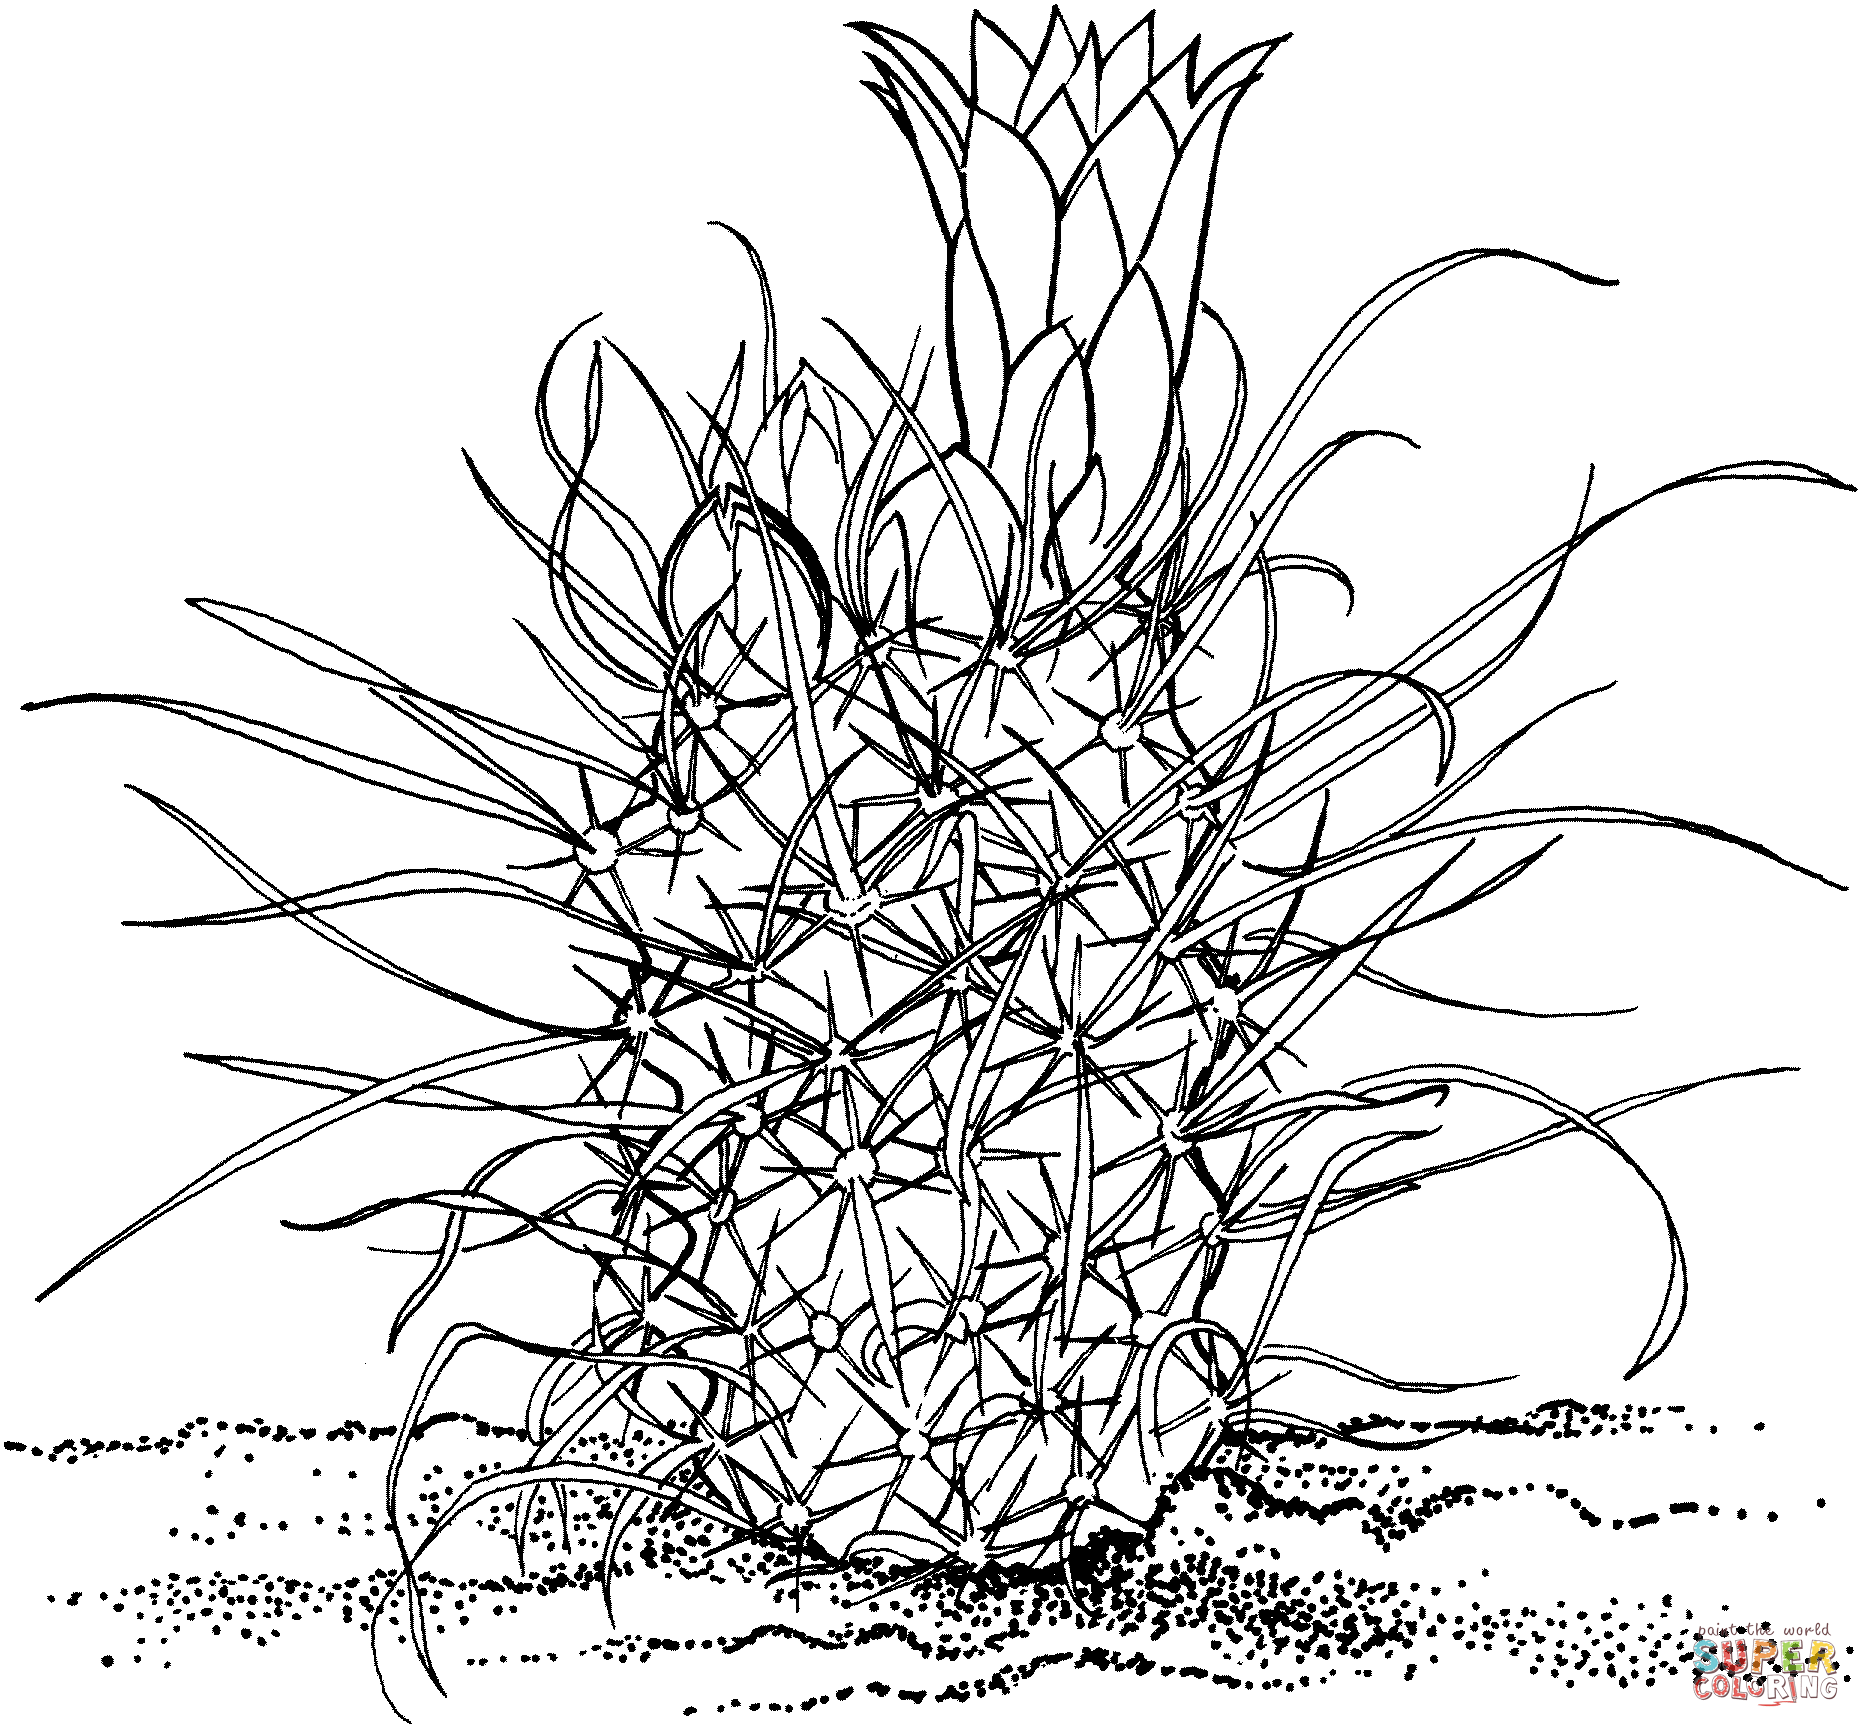 Toumeya Papyracantha o Cactus Gramma Grass de Cactus